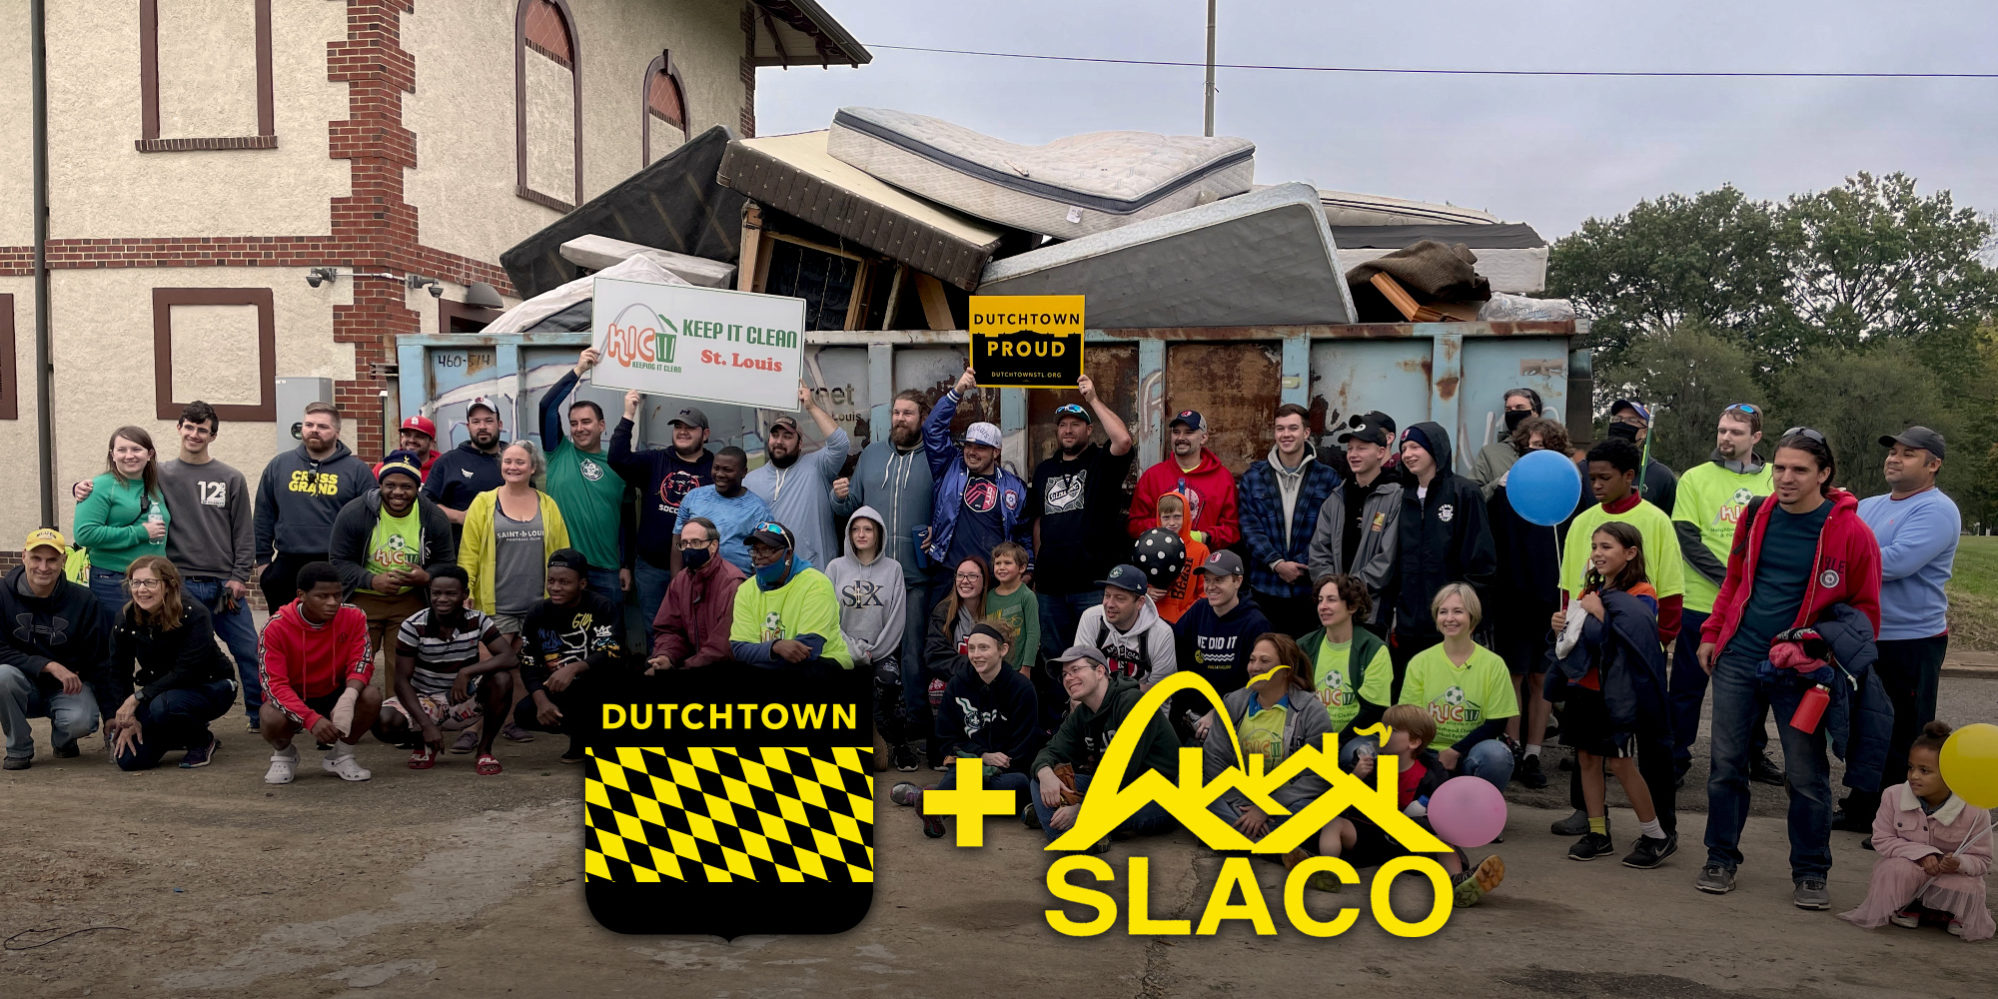 تعاونت شوارع داتشتاون الرئيسية مع SLACO في تنظيف الحي Keep It Clean في Marquette Park.